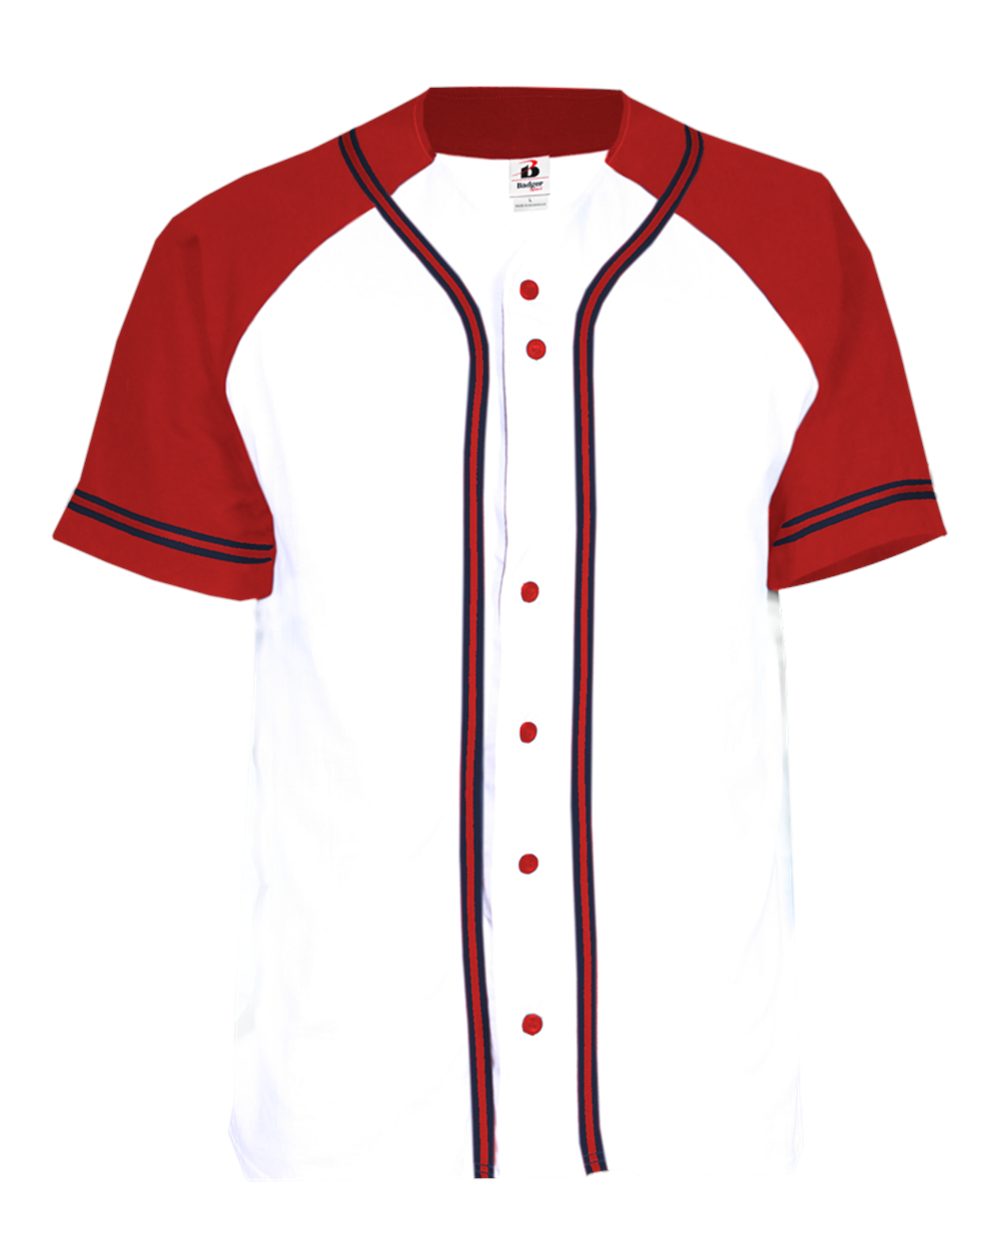 baseball-jersey-template-clipart-best